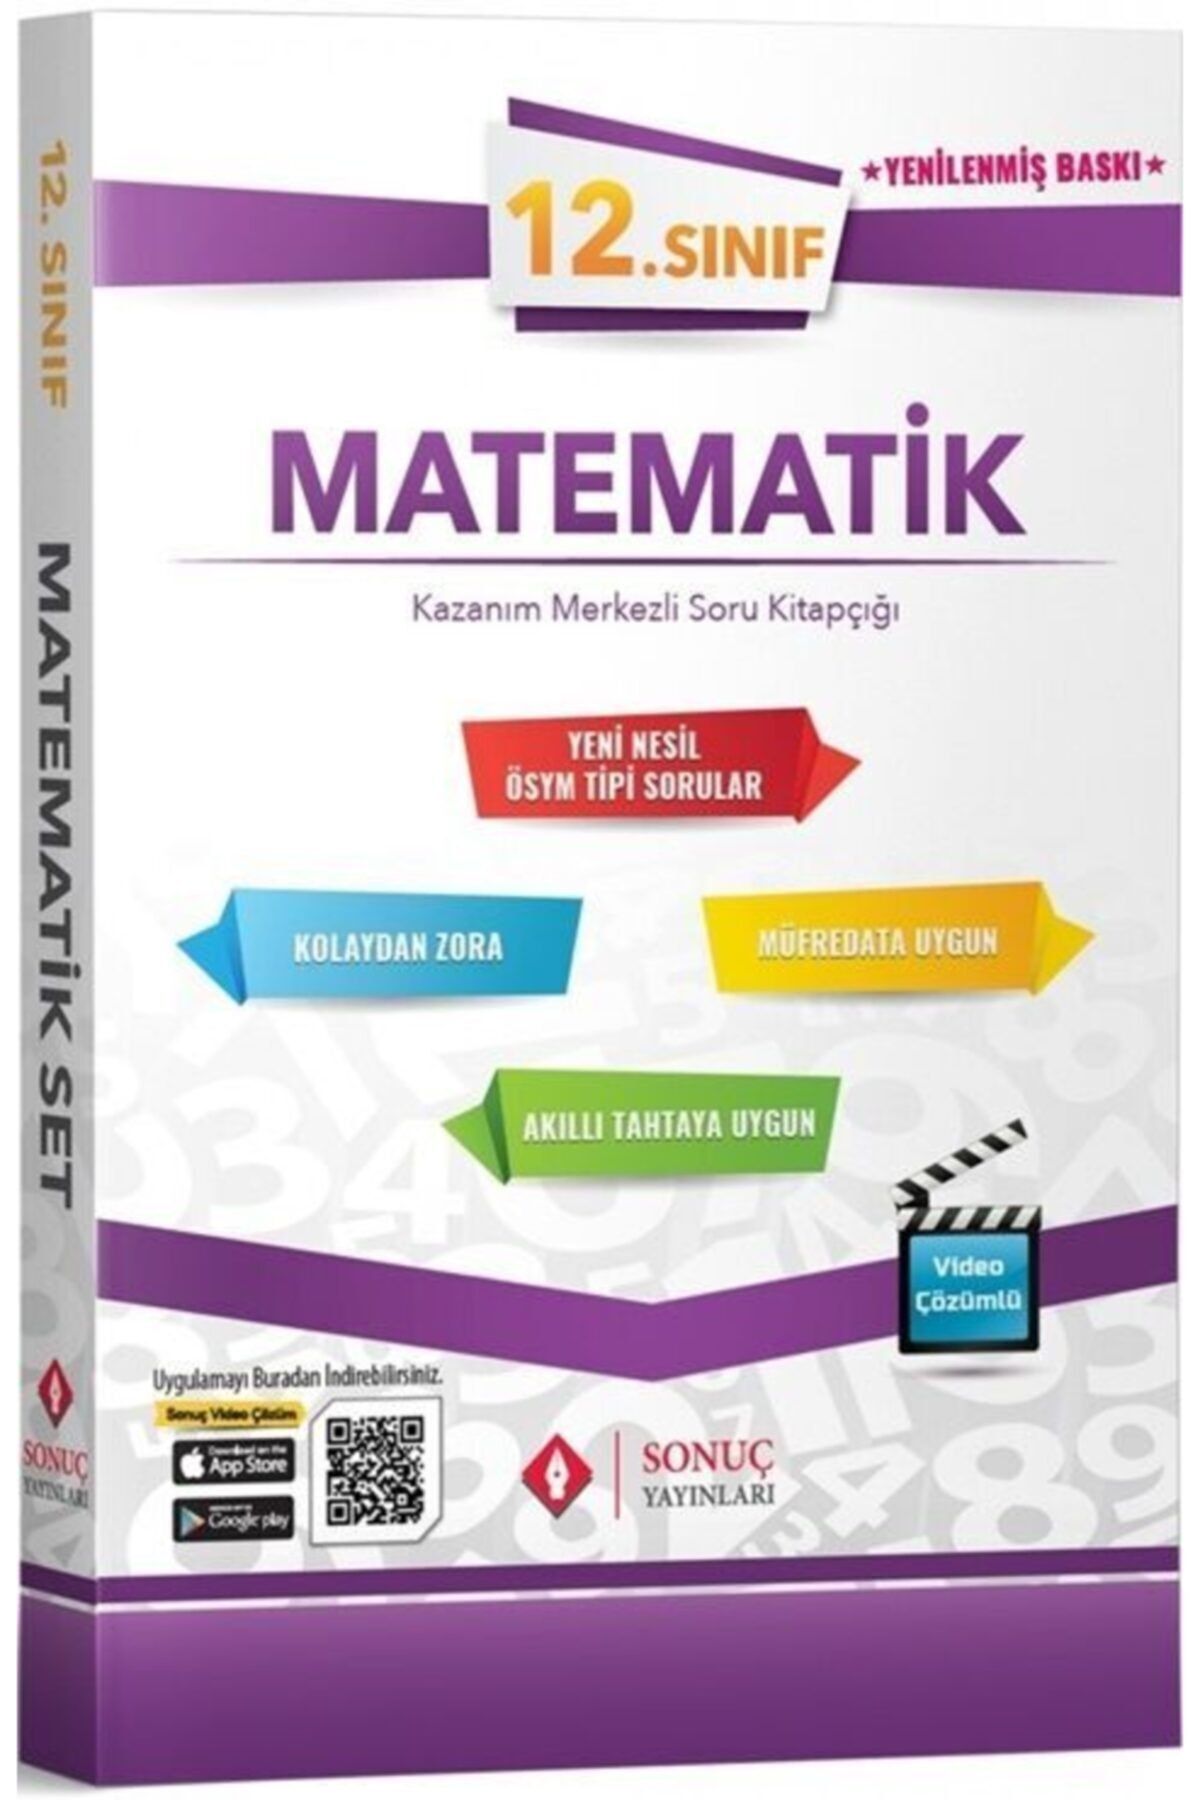 Rota Yayınları Sonuç Yayınları 12.sınıf Matematik Seti 2021